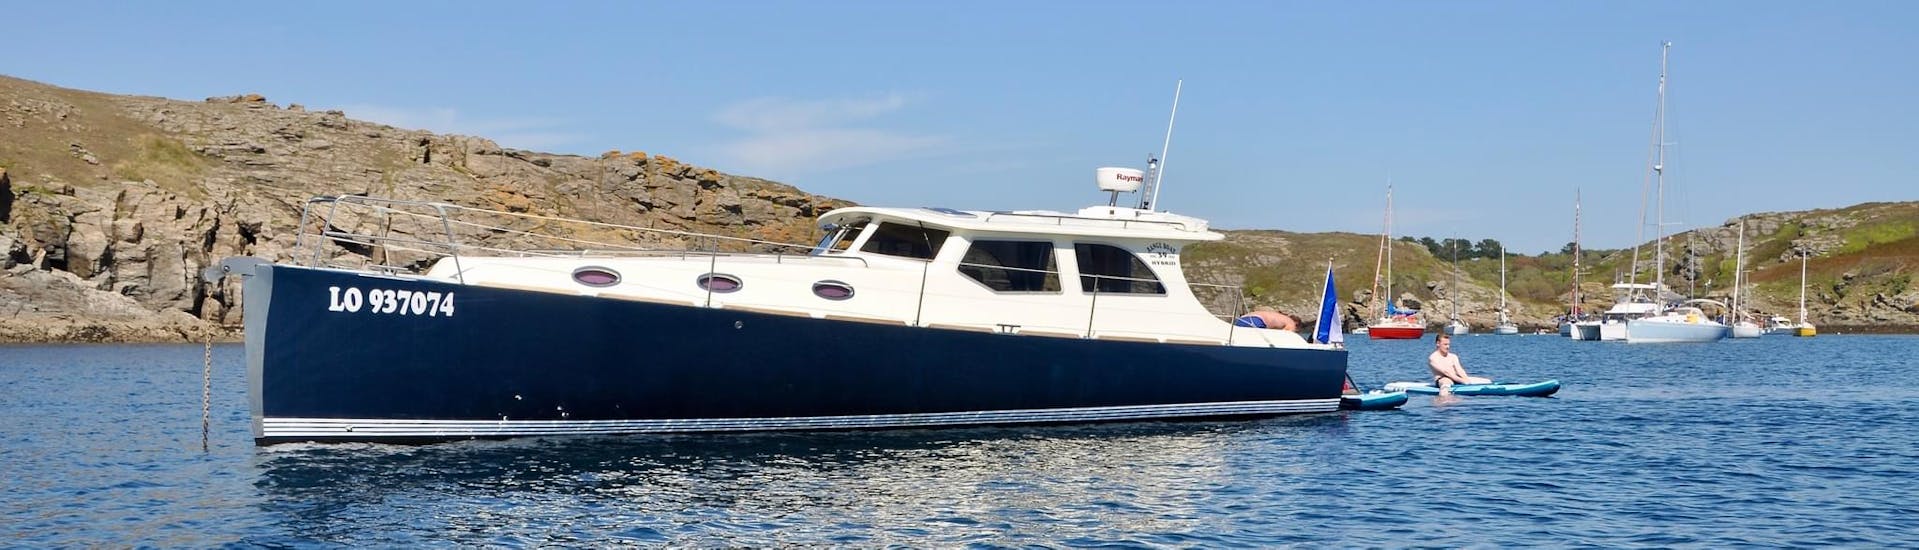 Een foto van de KeyLargo-boot voor het eiland Groix.